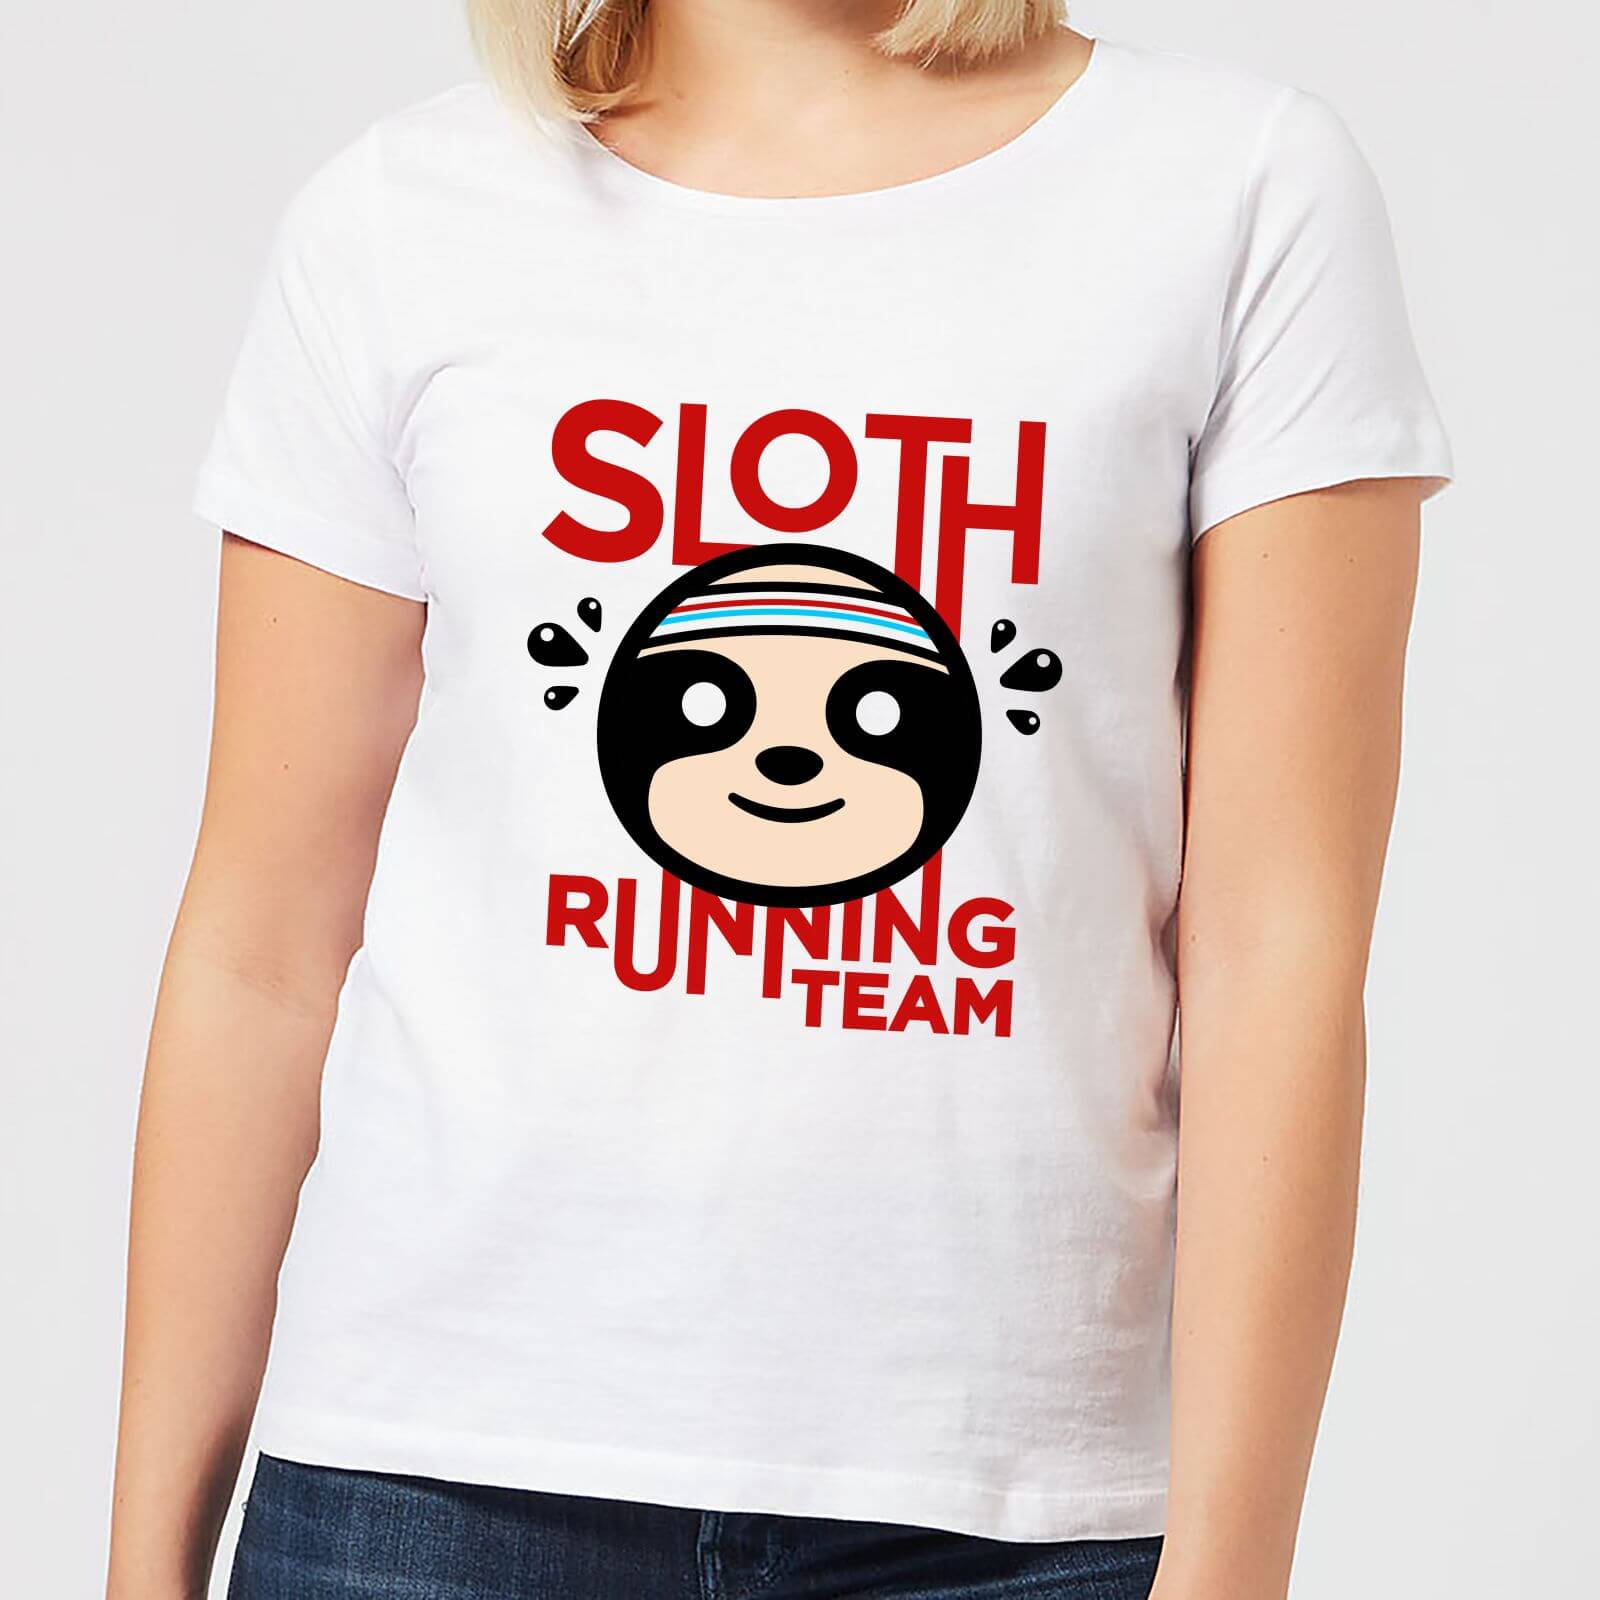 Sloth Running Team Women's T-Shirt - White - M - White